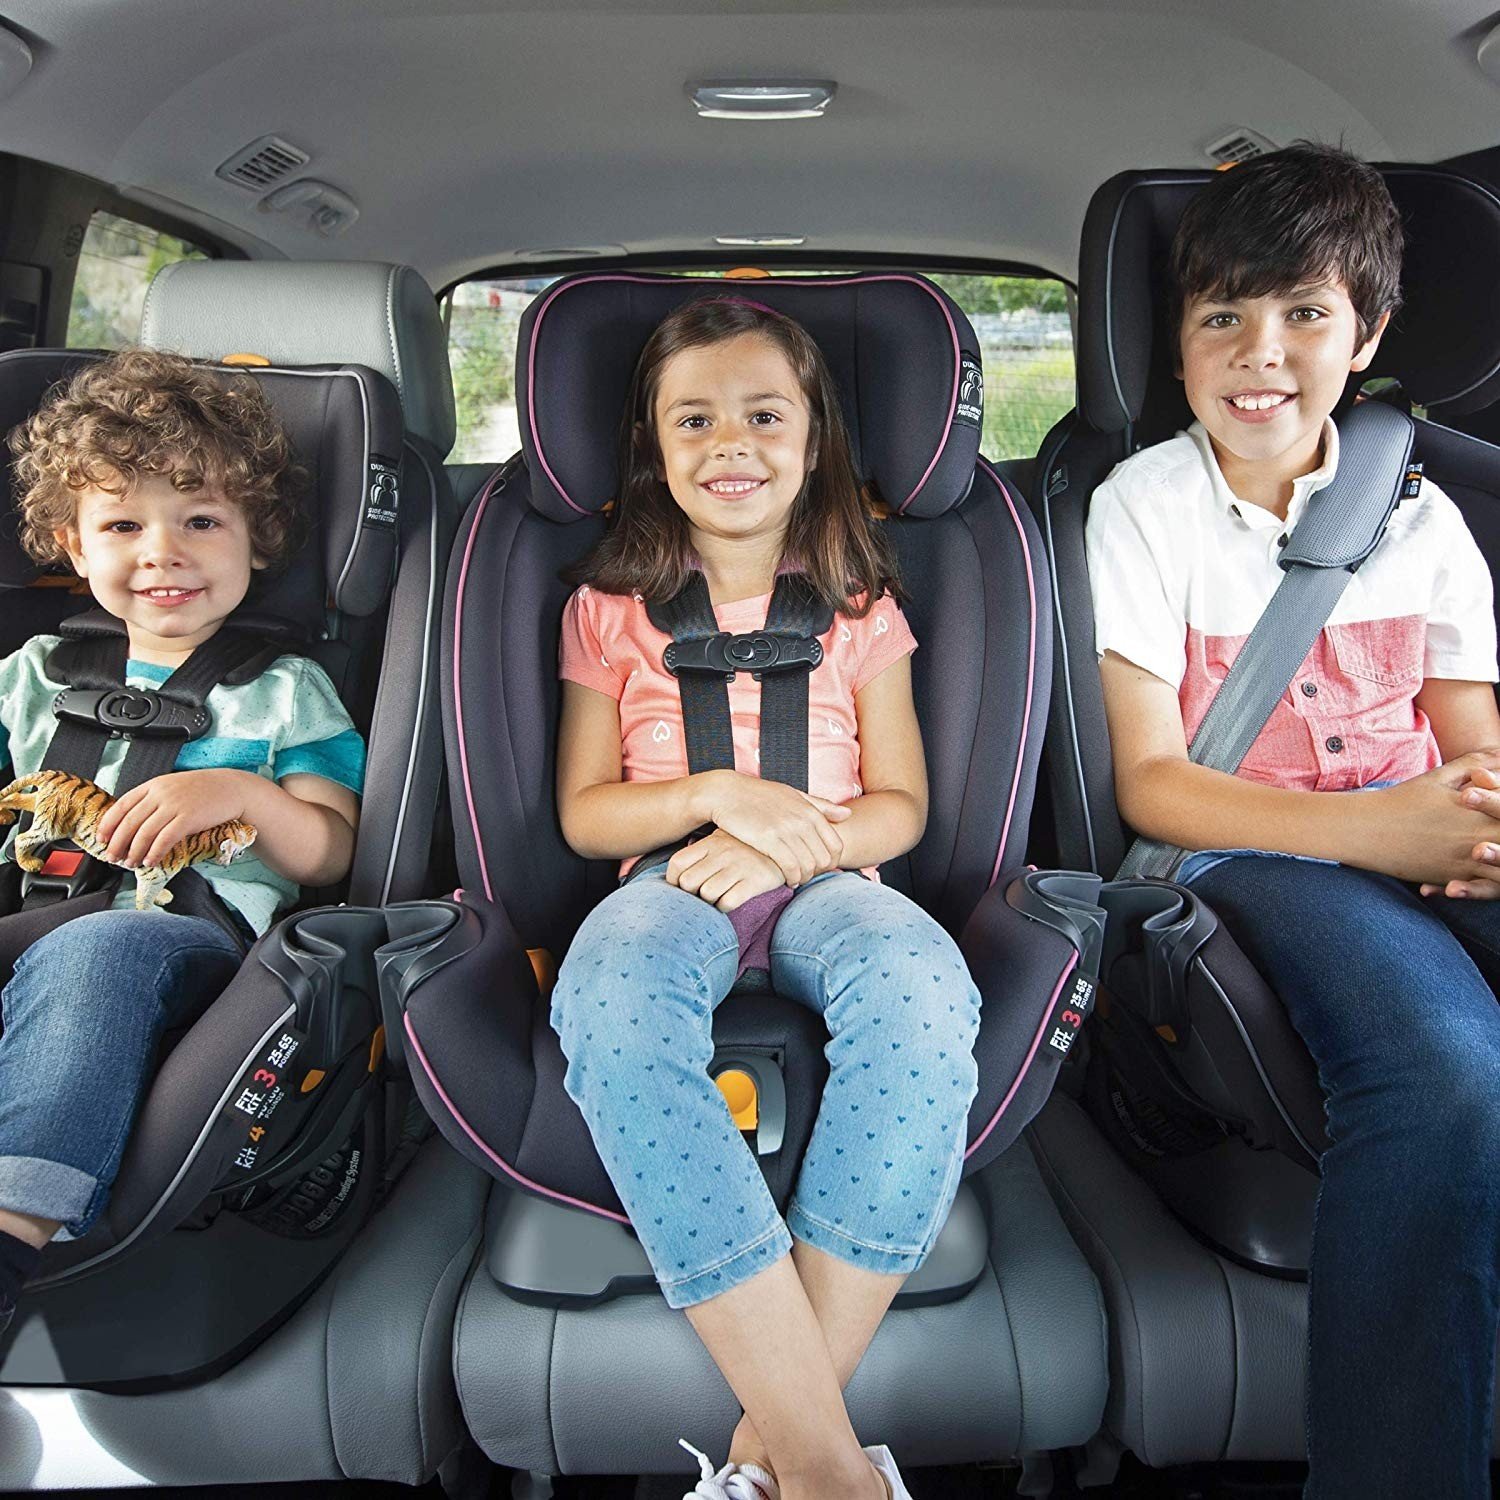 Детское кресло в автомобиле – обязательно! Почему?